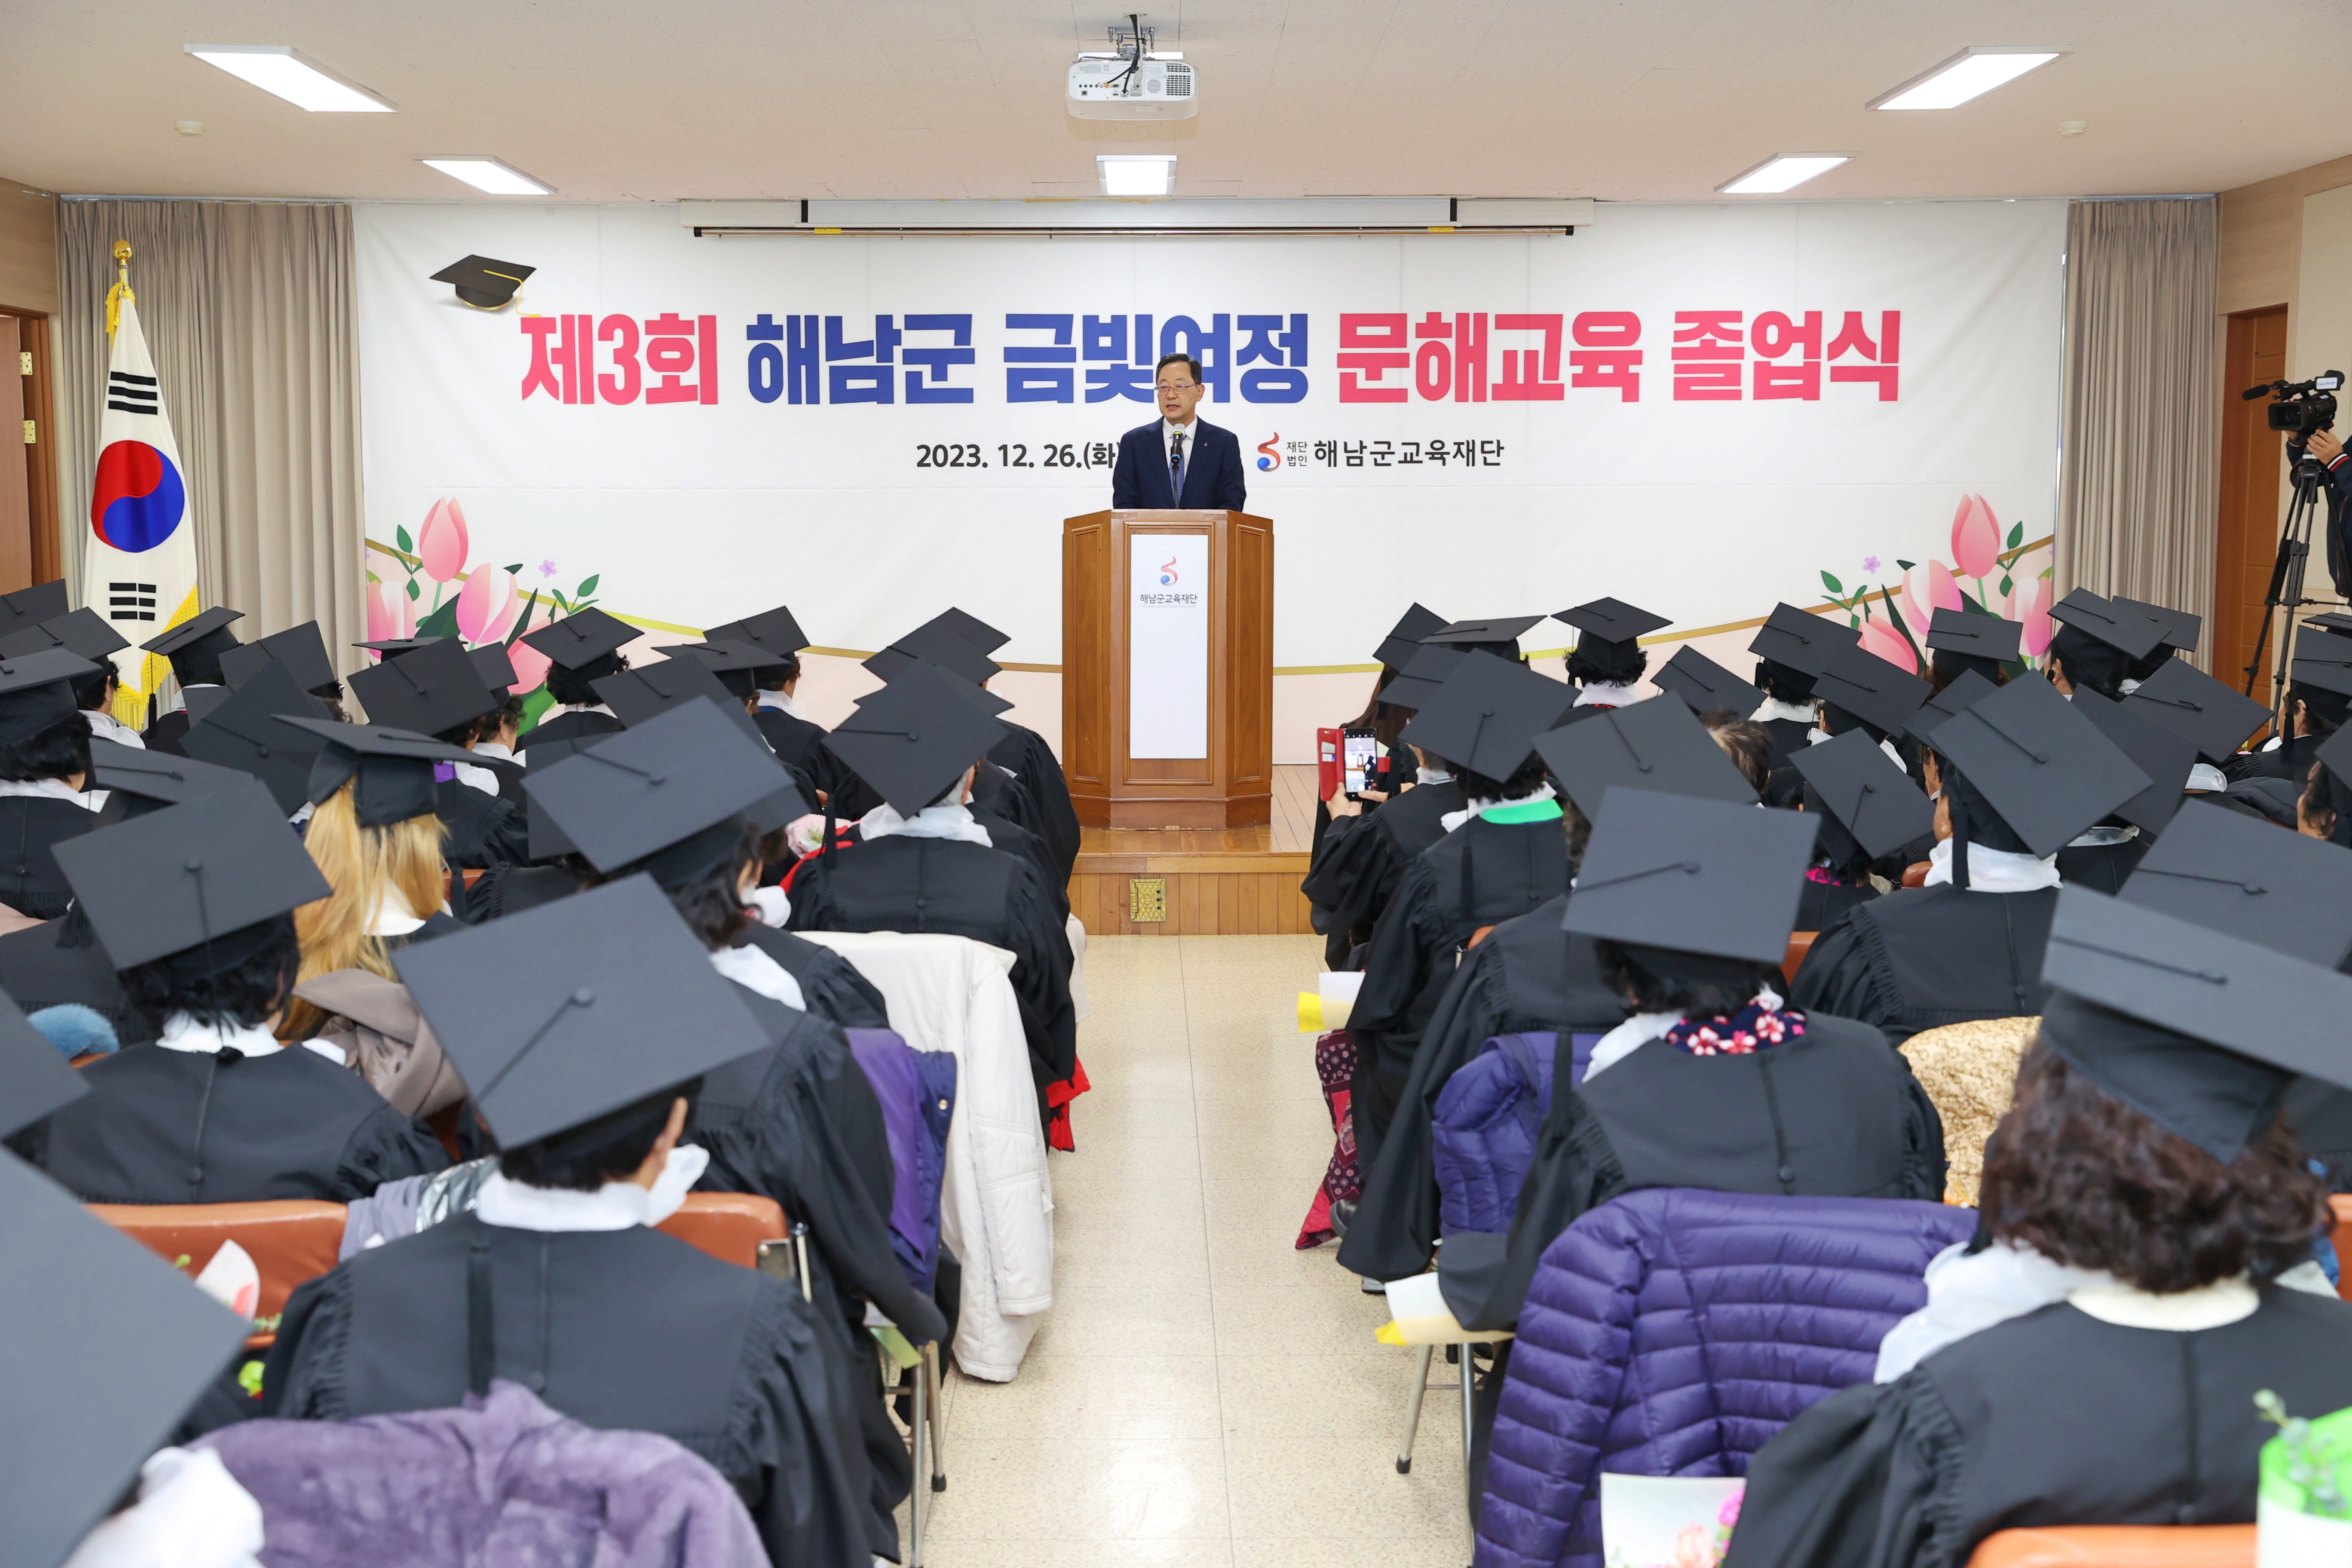 제3회 해남군 꿈보배 학교 문해교육 졸업식